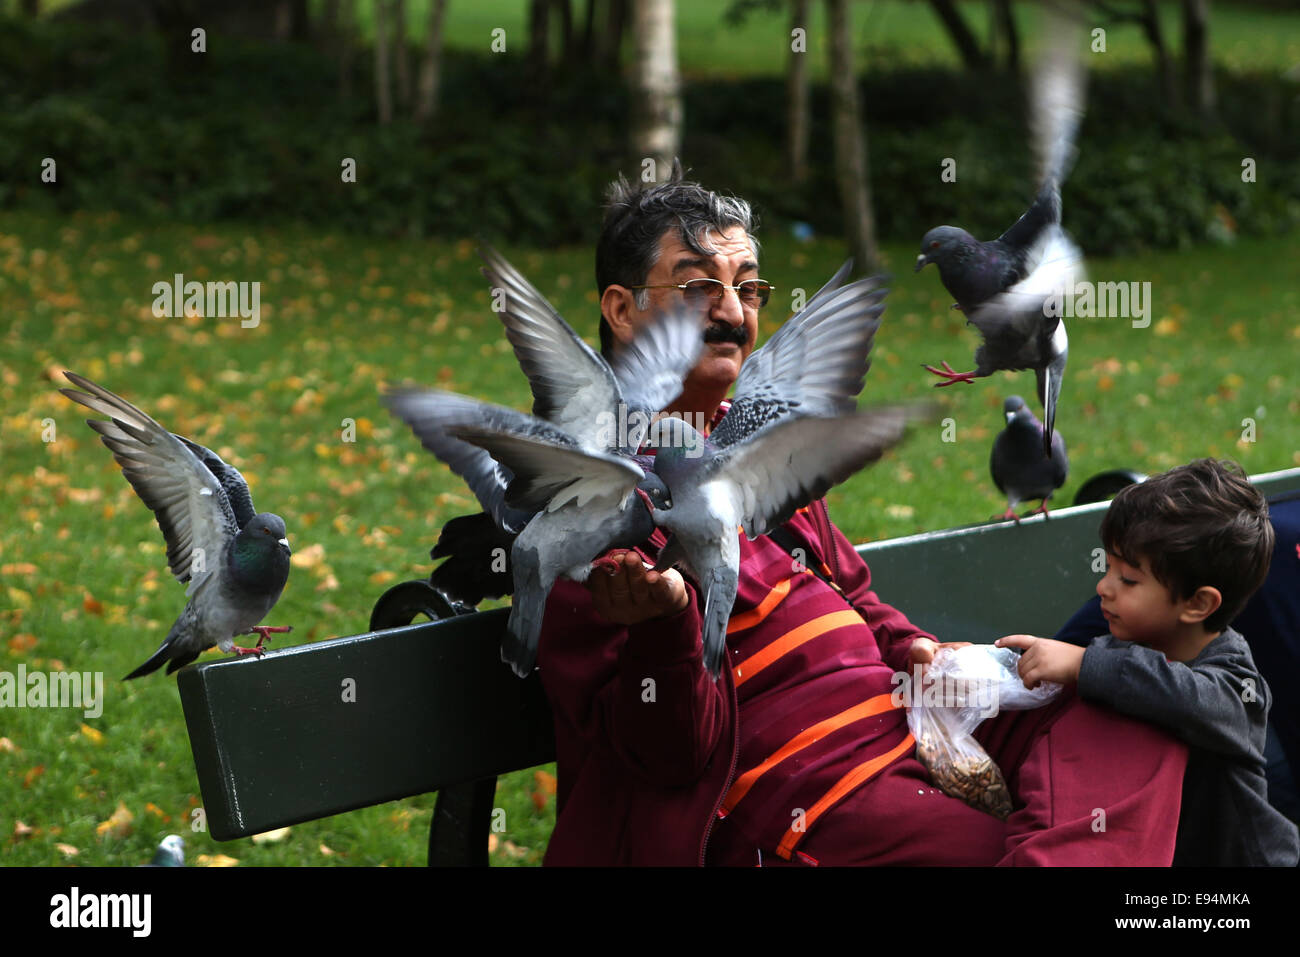 Londres, Royaume-Uni. 19 Oct, 2014. Un homme se nourrit les pigeons dans le centre de Londres, Grande-Bretagne, le 19 octobre 2014, après plusieurs jours de pluie. © Han Yan/Xinhua/Alamy Live News Banque D'Images